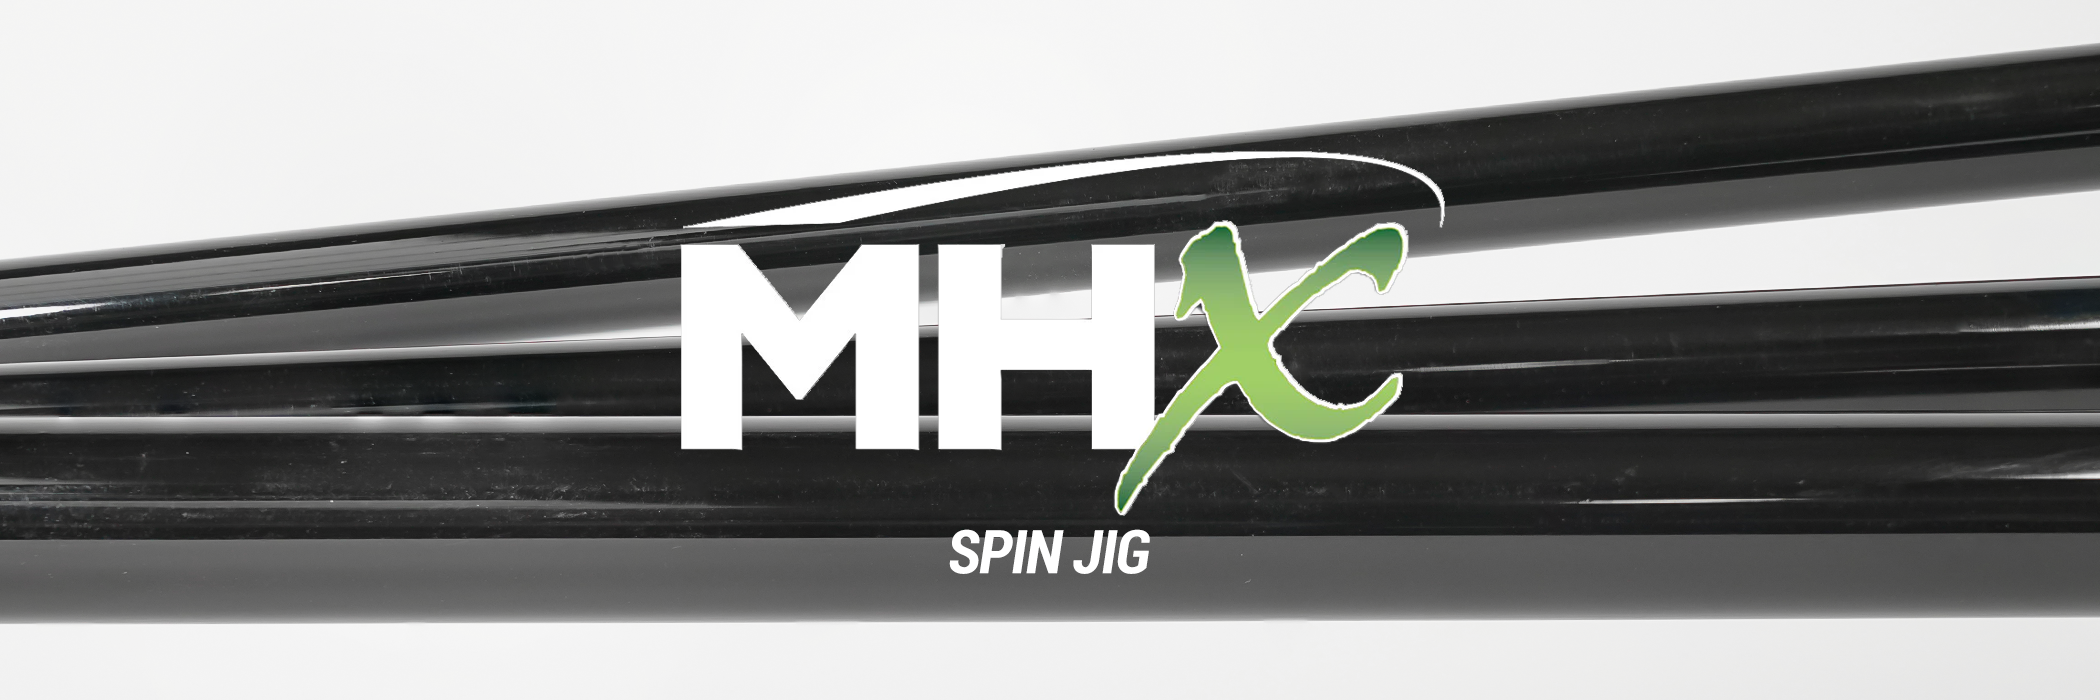 MHX - Spin Jig